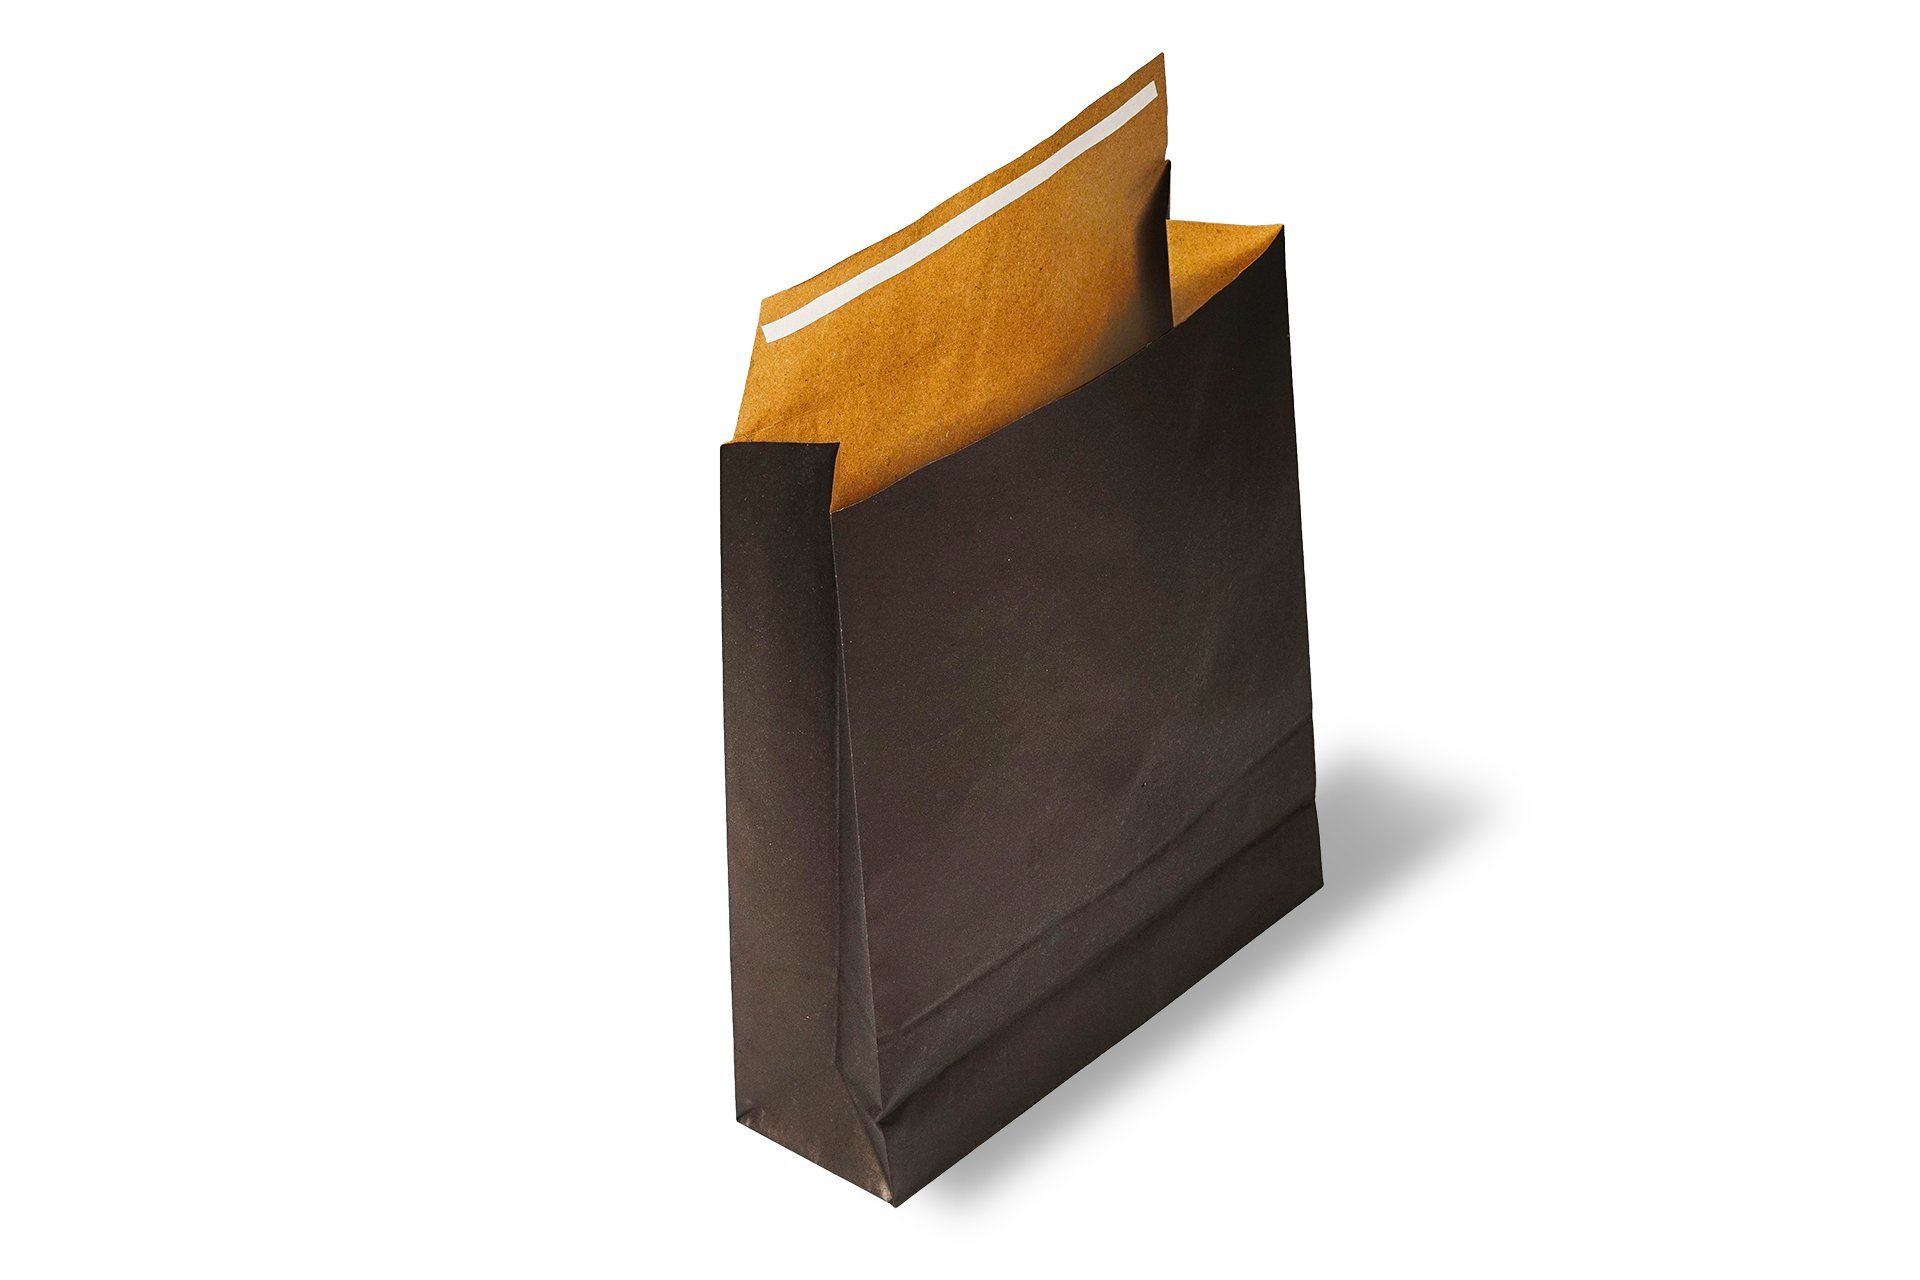 Roco Paper Hediye Paketi 15*6*25,5 cm Kese Kağıdı Yapışkanlı Ağız Siyah 25'li Paket